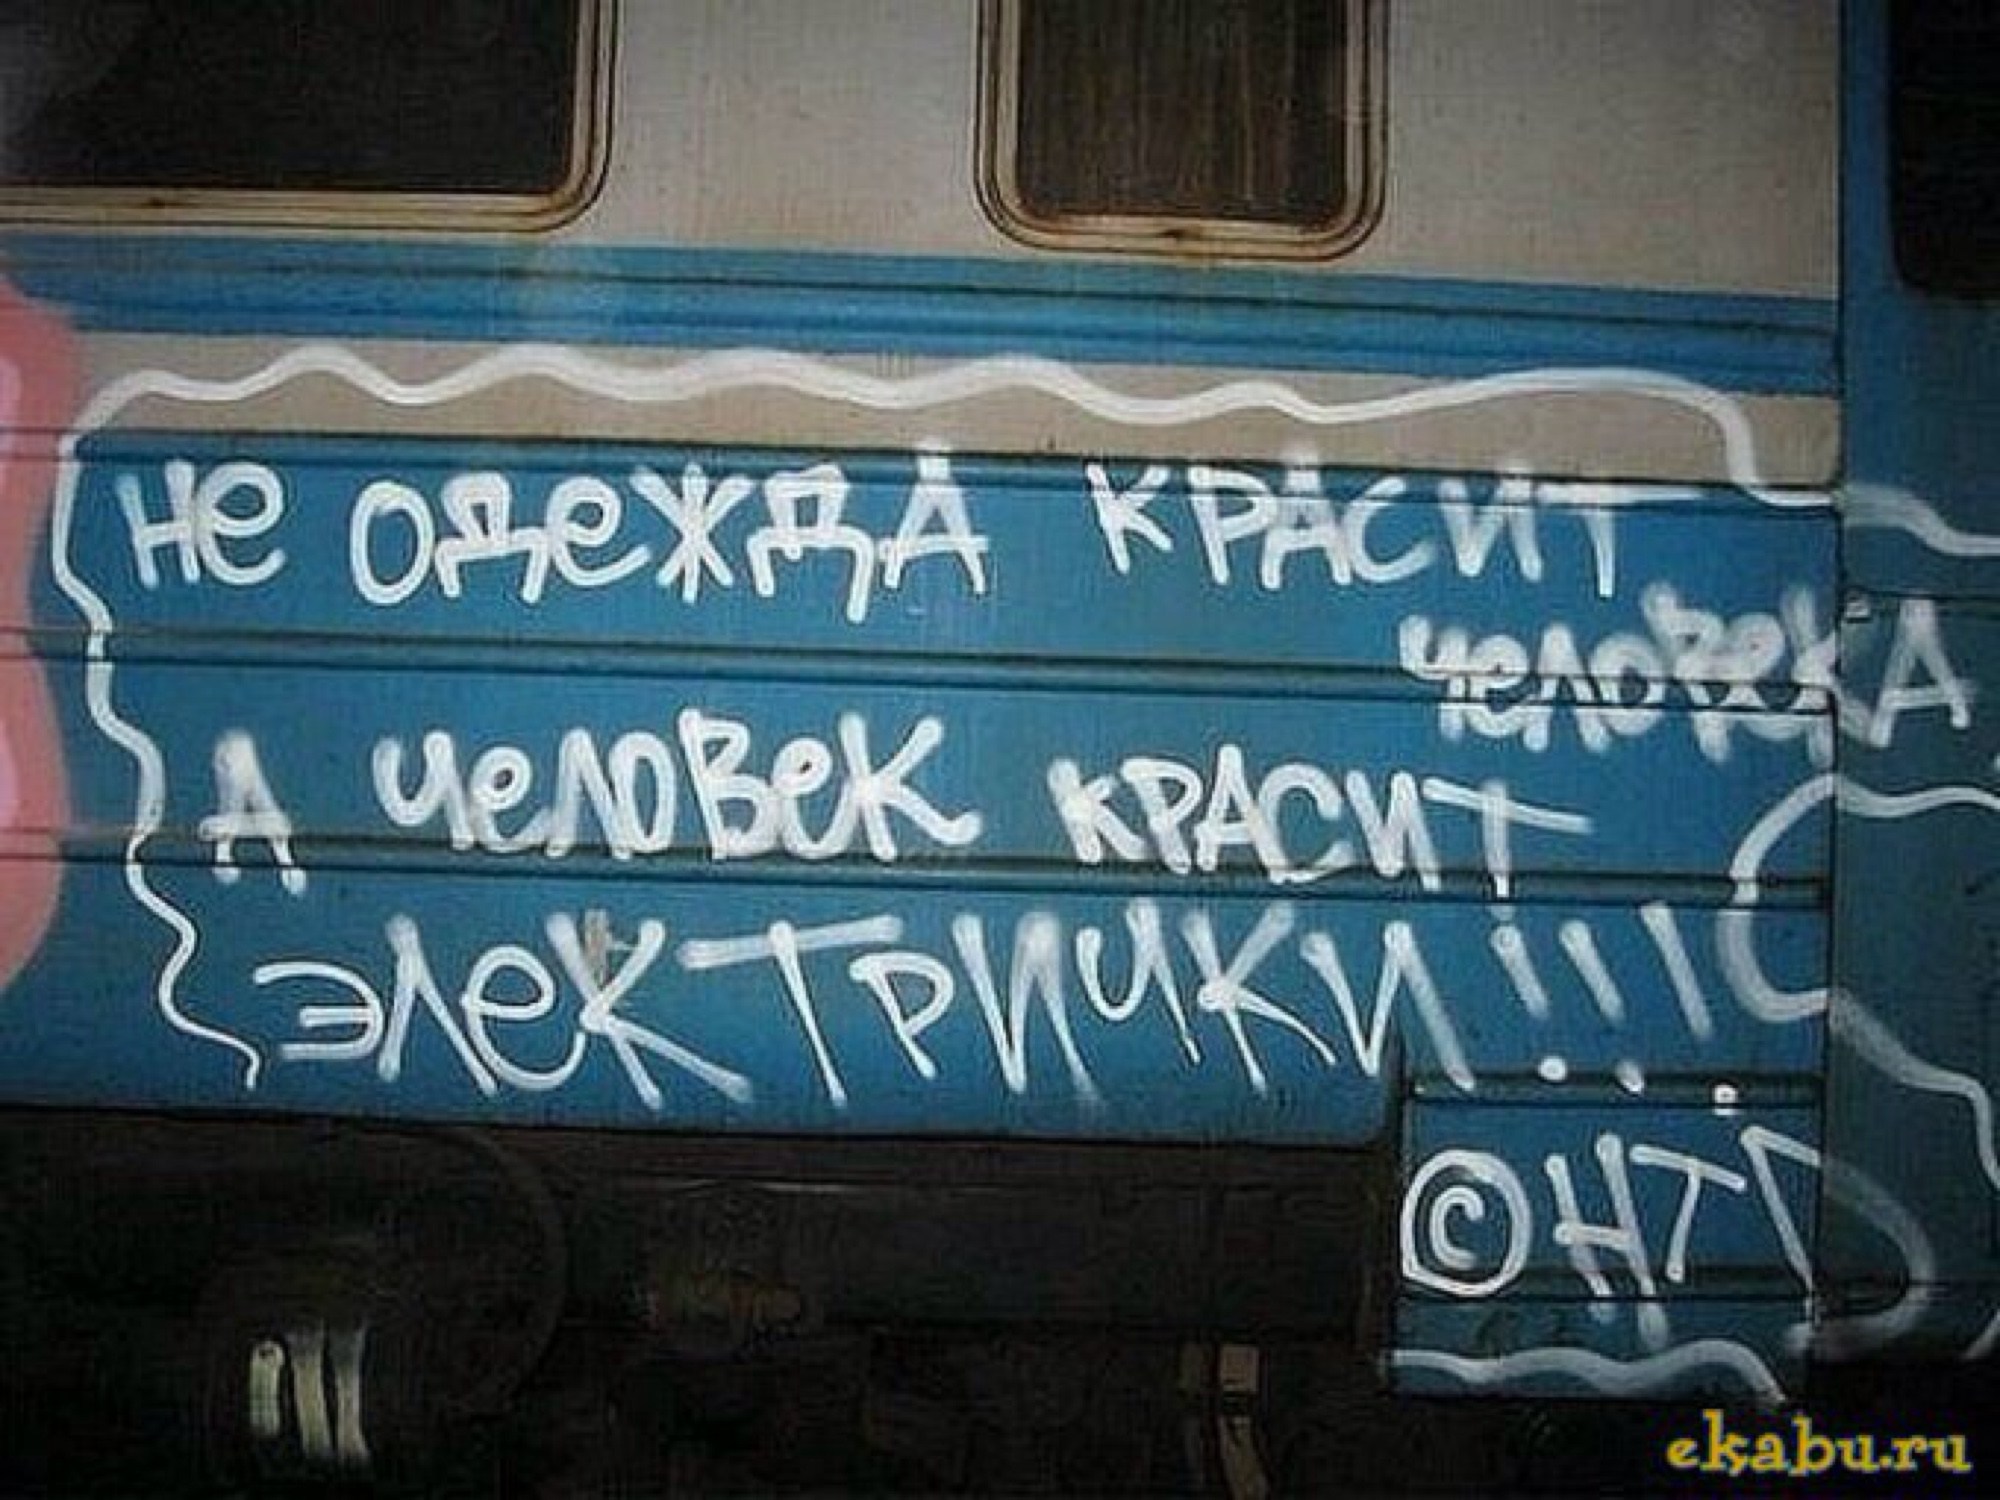 Надписи на поездах